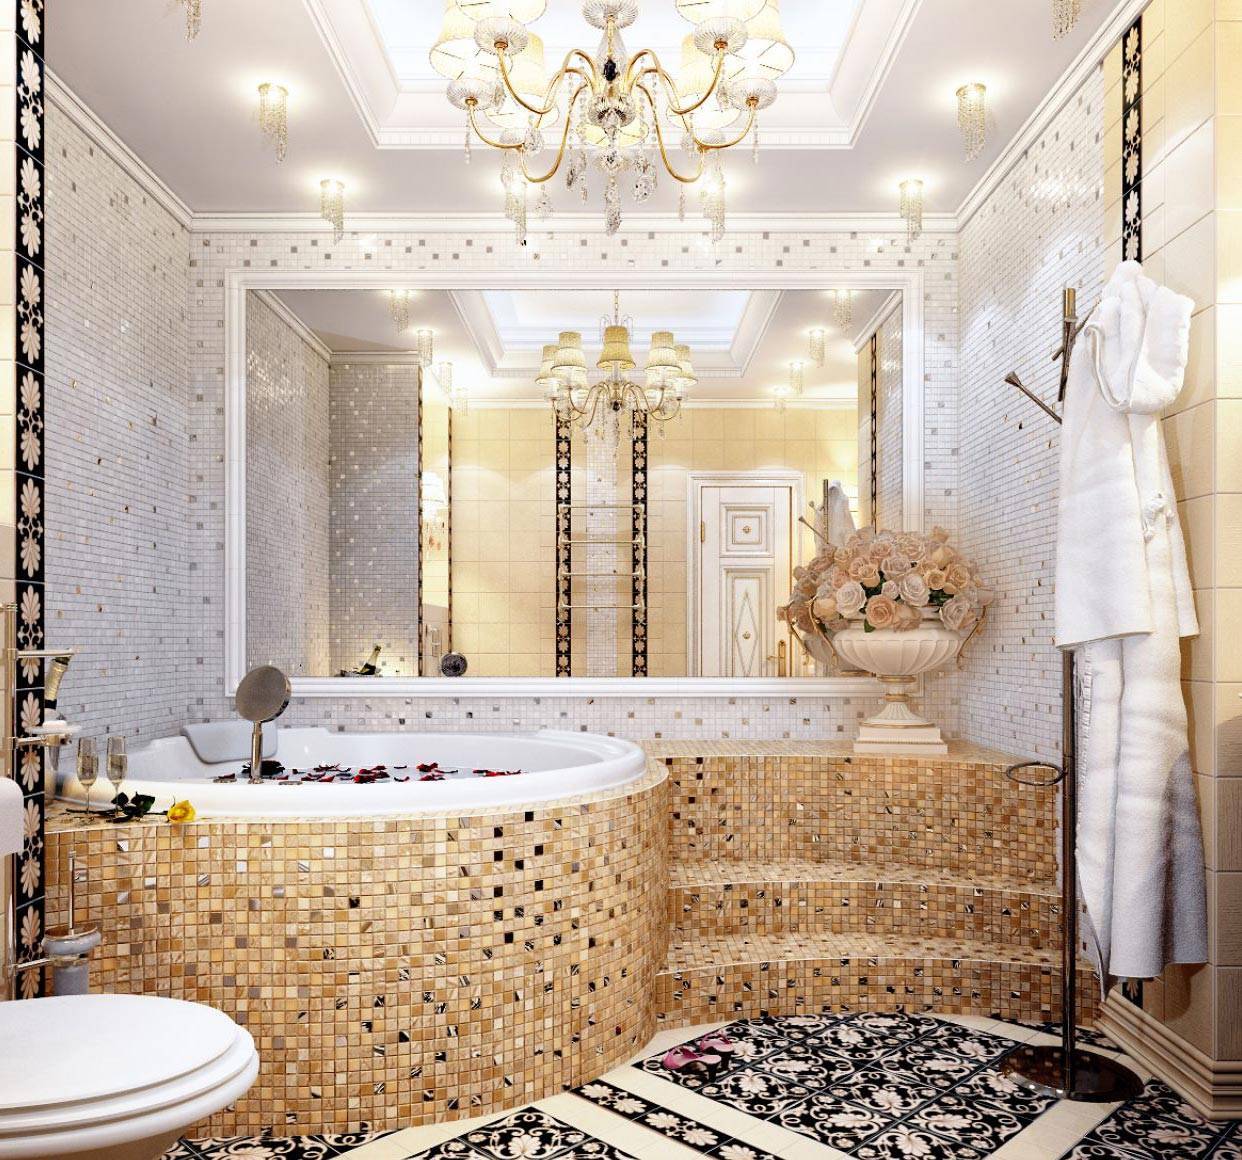 красивый дизайн плитки в ванной комнате фото